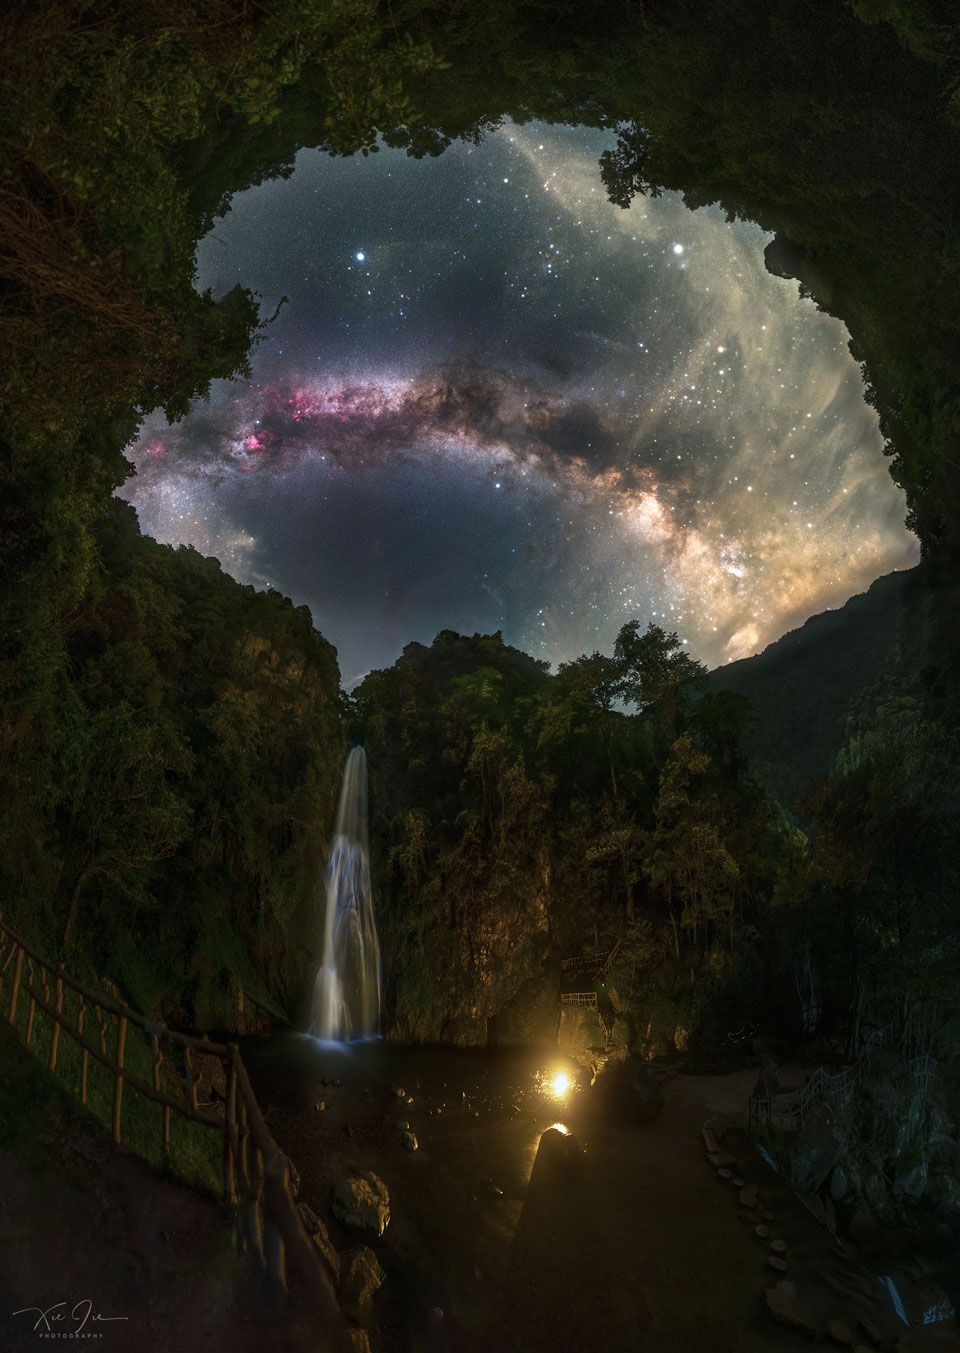 Zdjęcie pokazuje wodospad pod nocnym niebem zdominowanym przez łuk
Dreogi Mlecznej. Zobacz opis. Po kliknięciu obrazka załaduje się wersja
 o największej dostępnej rozdzielczości.